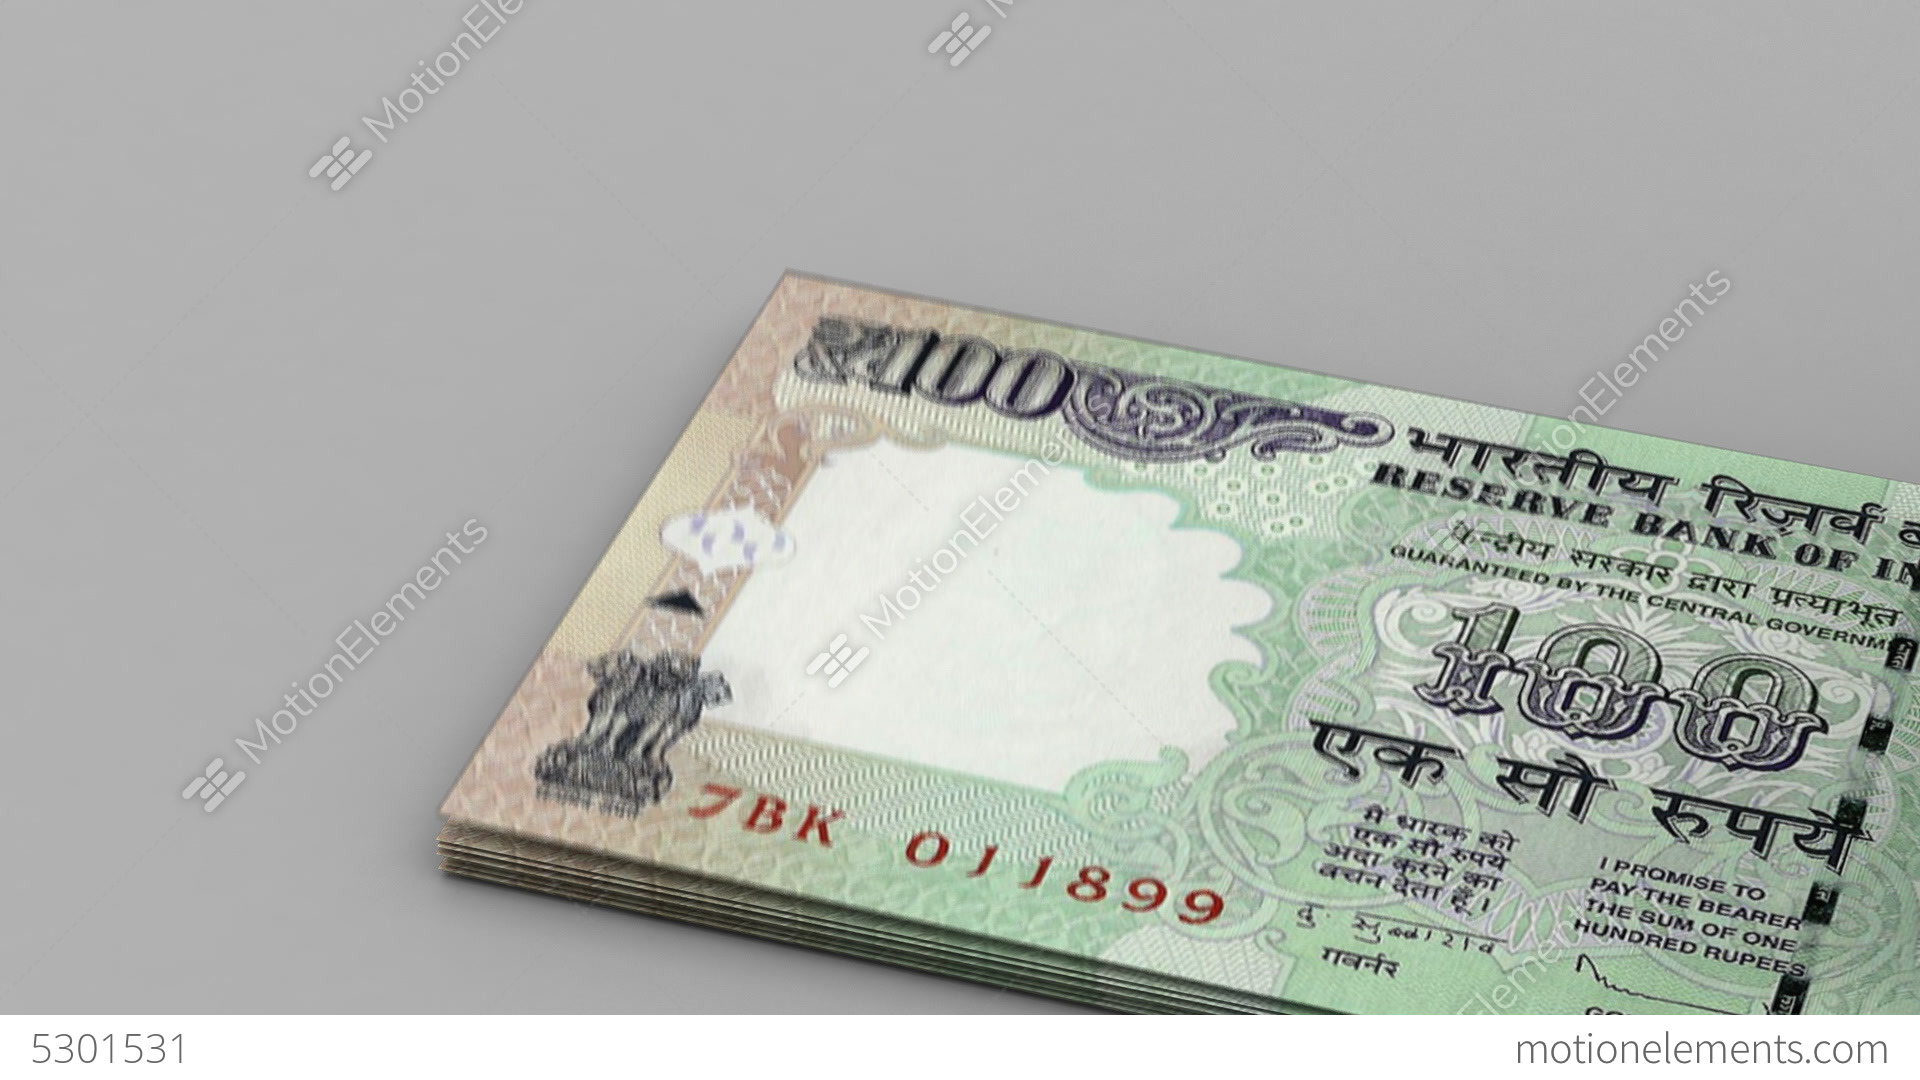 denaro indiano wallpaper hd,banconota,i soldi,contanti,carta,prodotto di carta